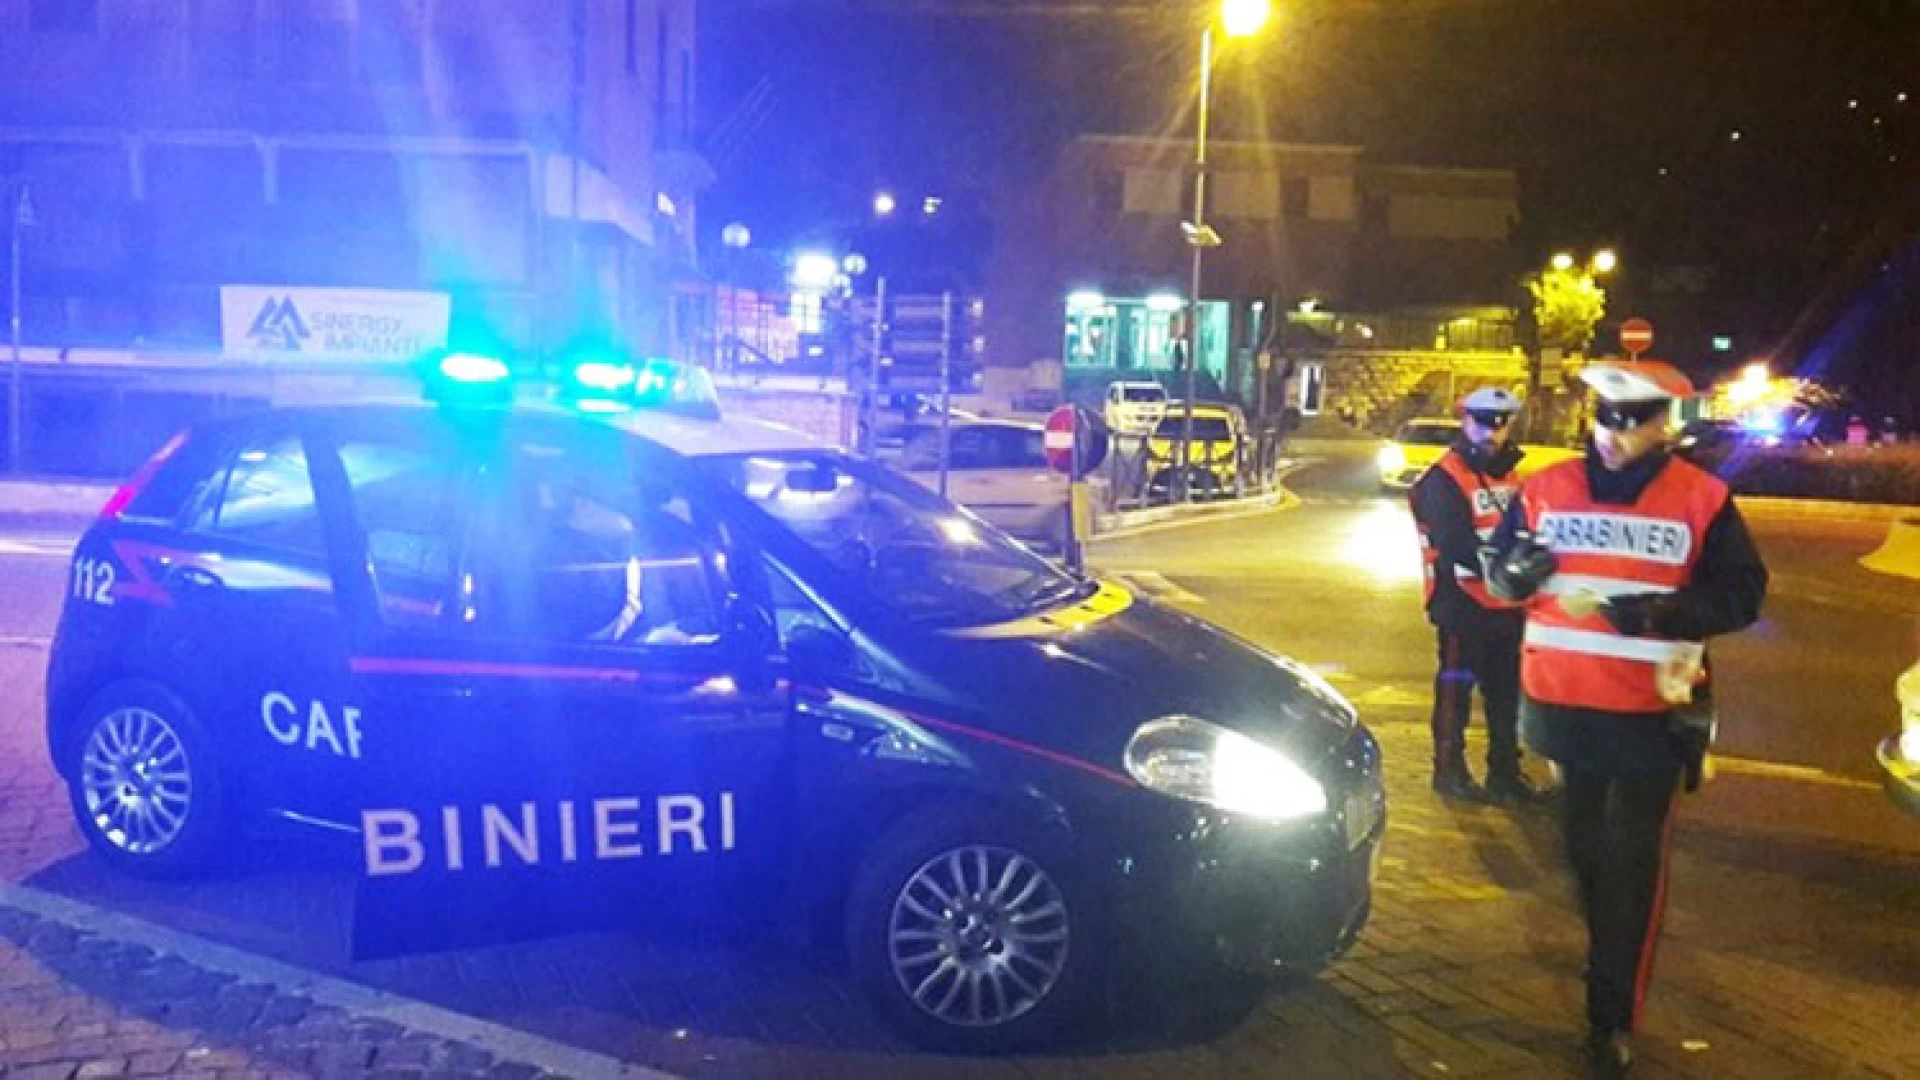 Isernia: Droga, alcol e lavoro nero, i Carabinieri eseguono denunce e sequestri. A Pozzilli denunciati due titolari di attività commerciali.